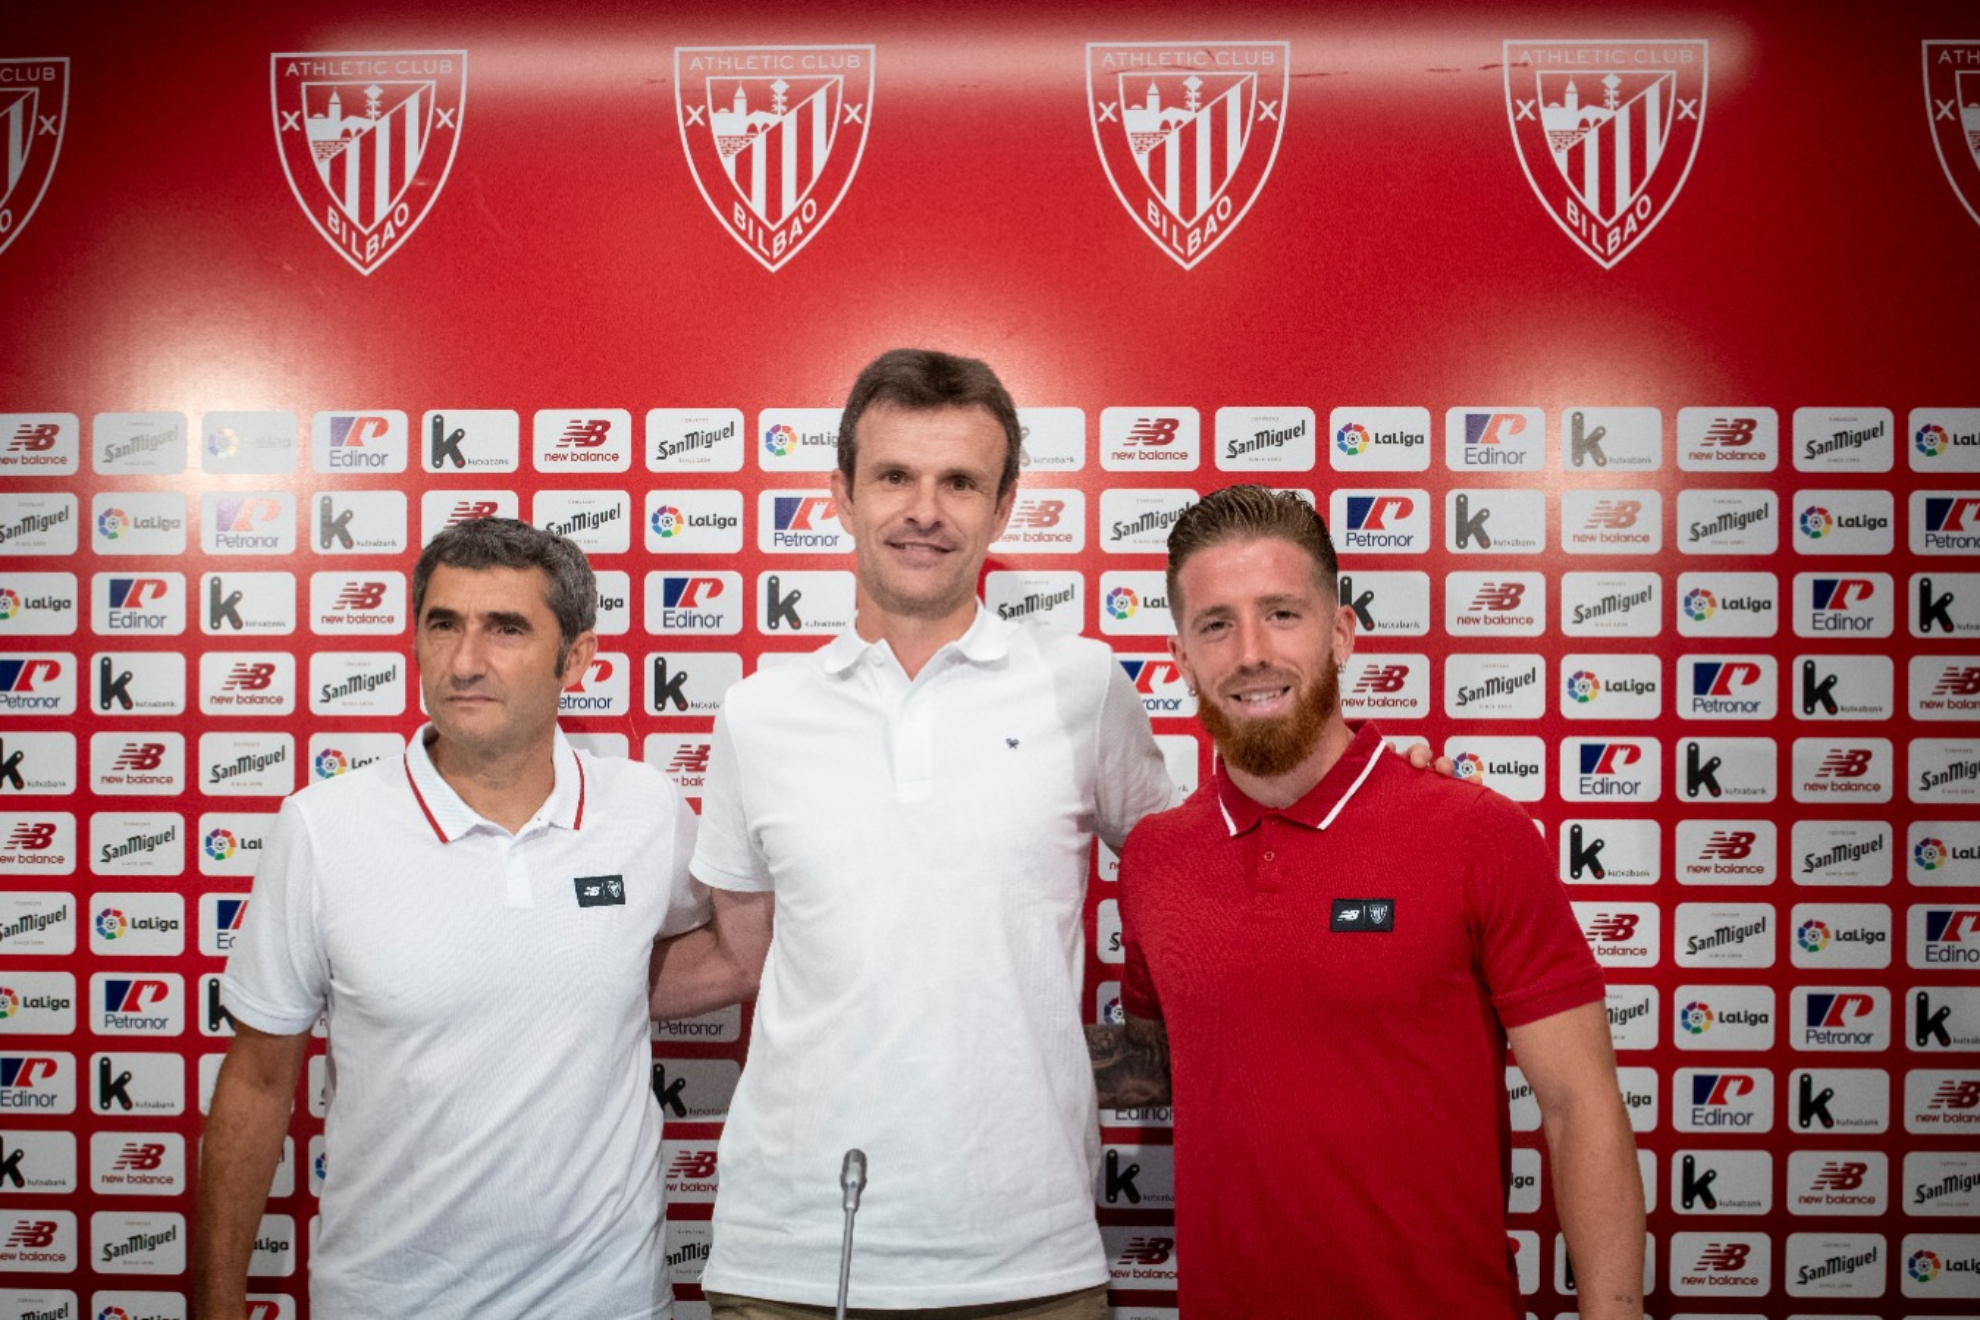 Uriarte, Valverde y Muniaín. / @AthleticClub